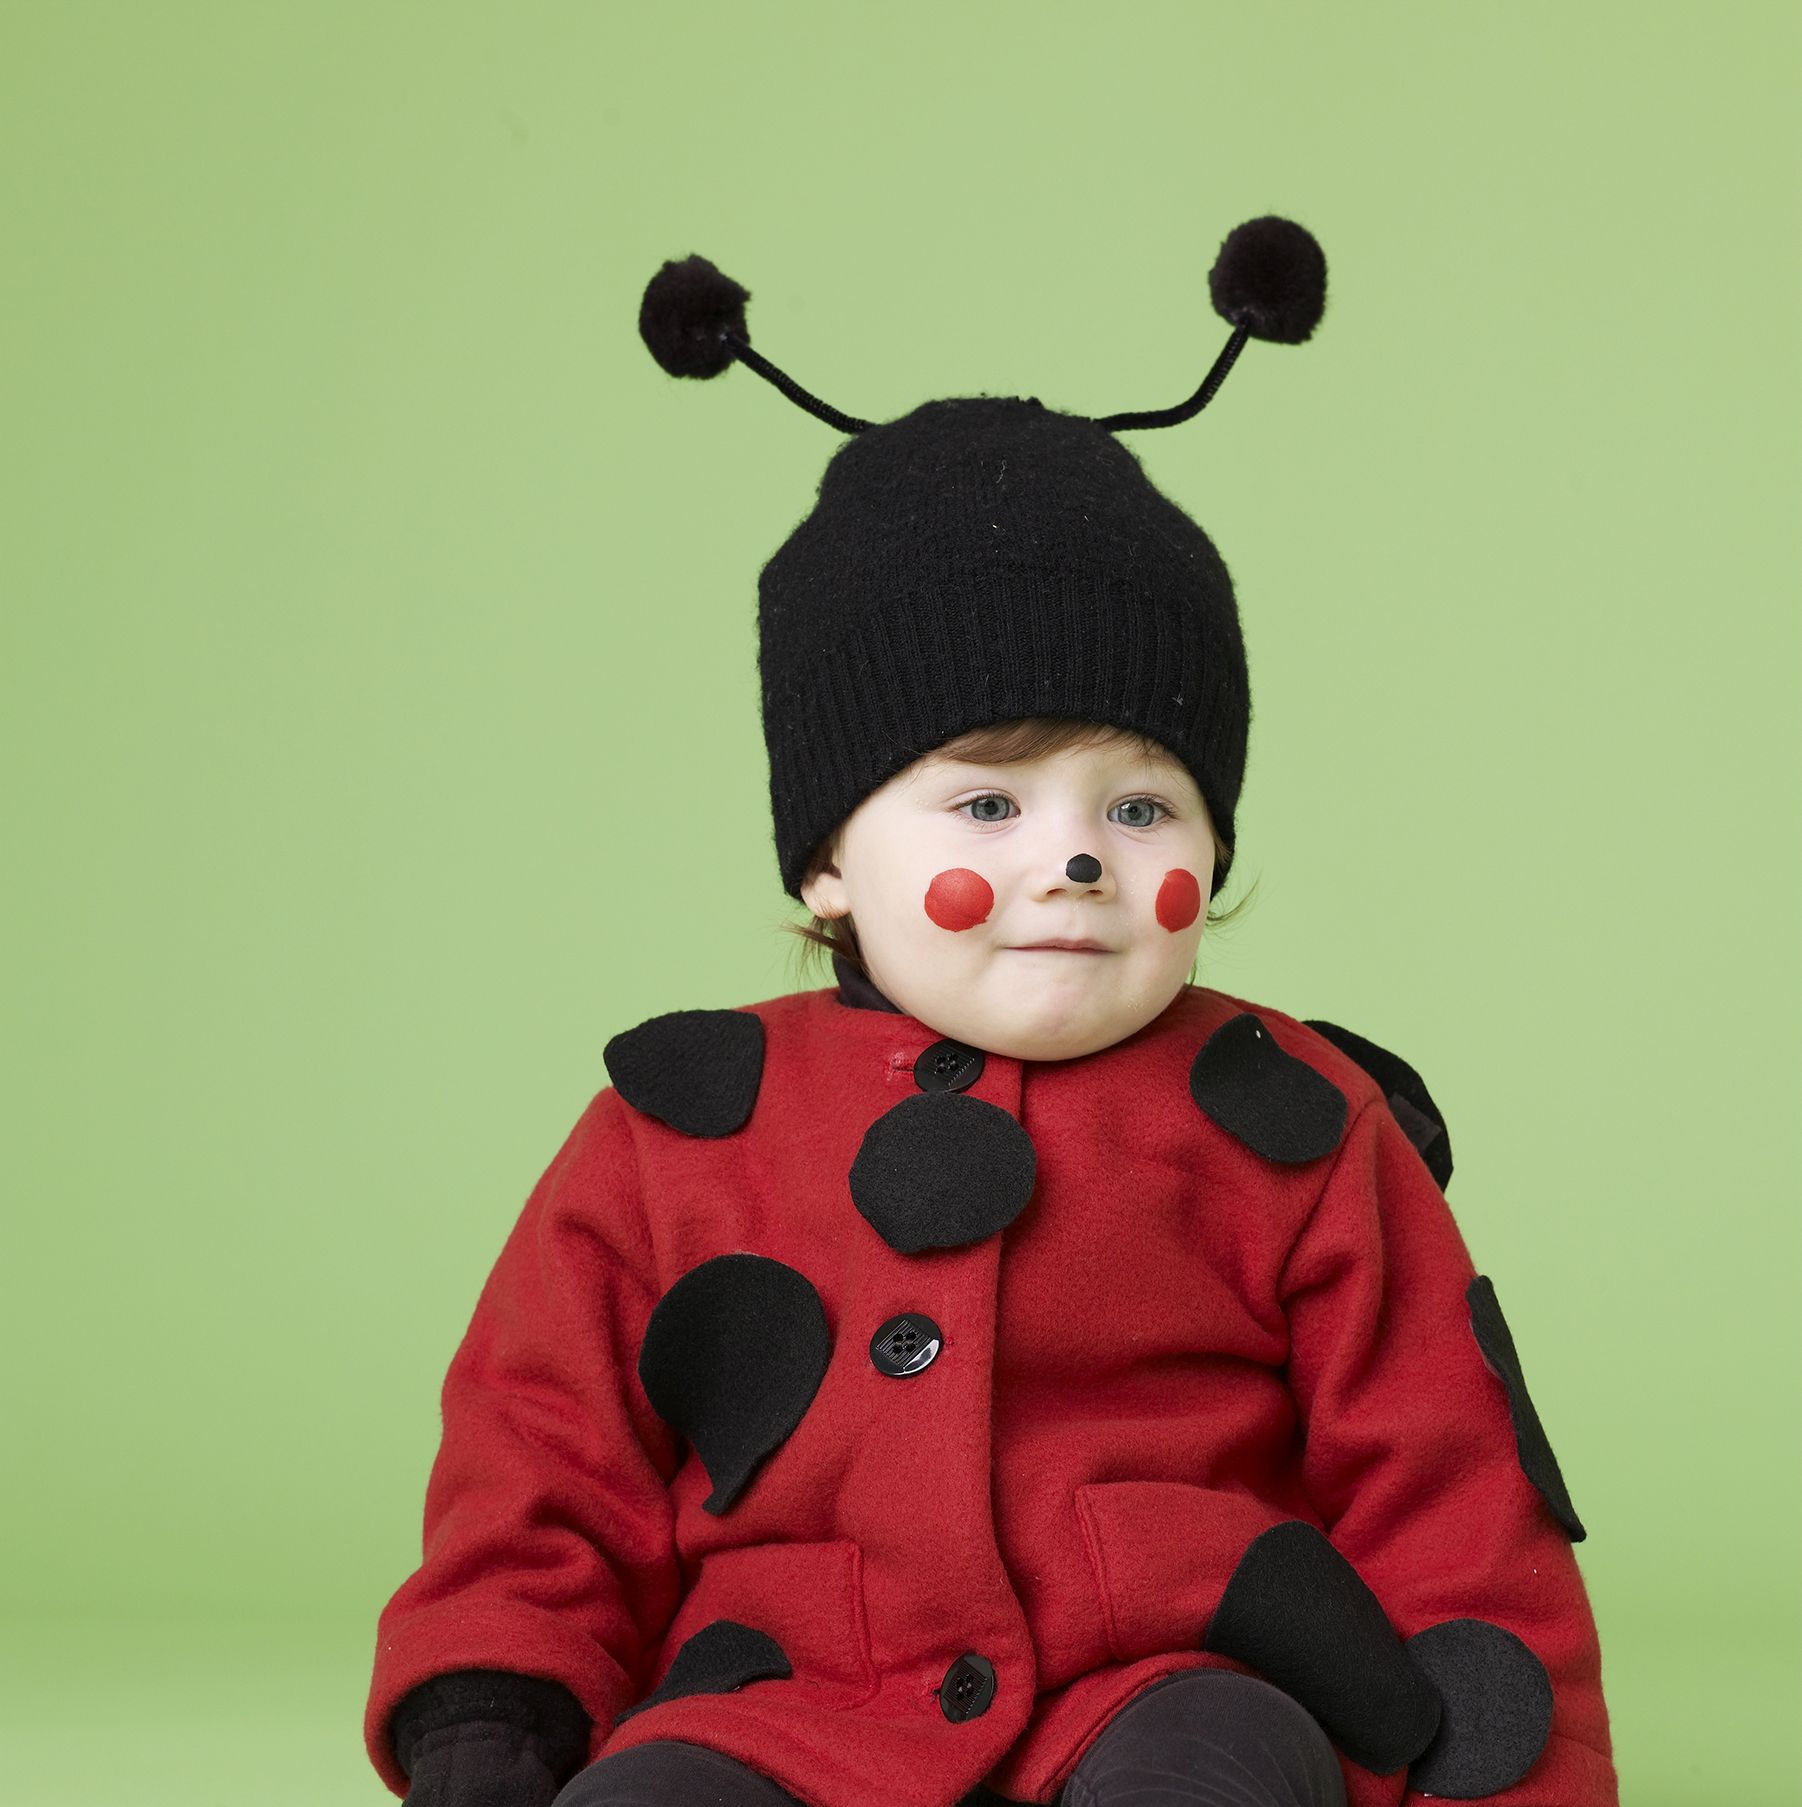 ladybug costume makeup for kids